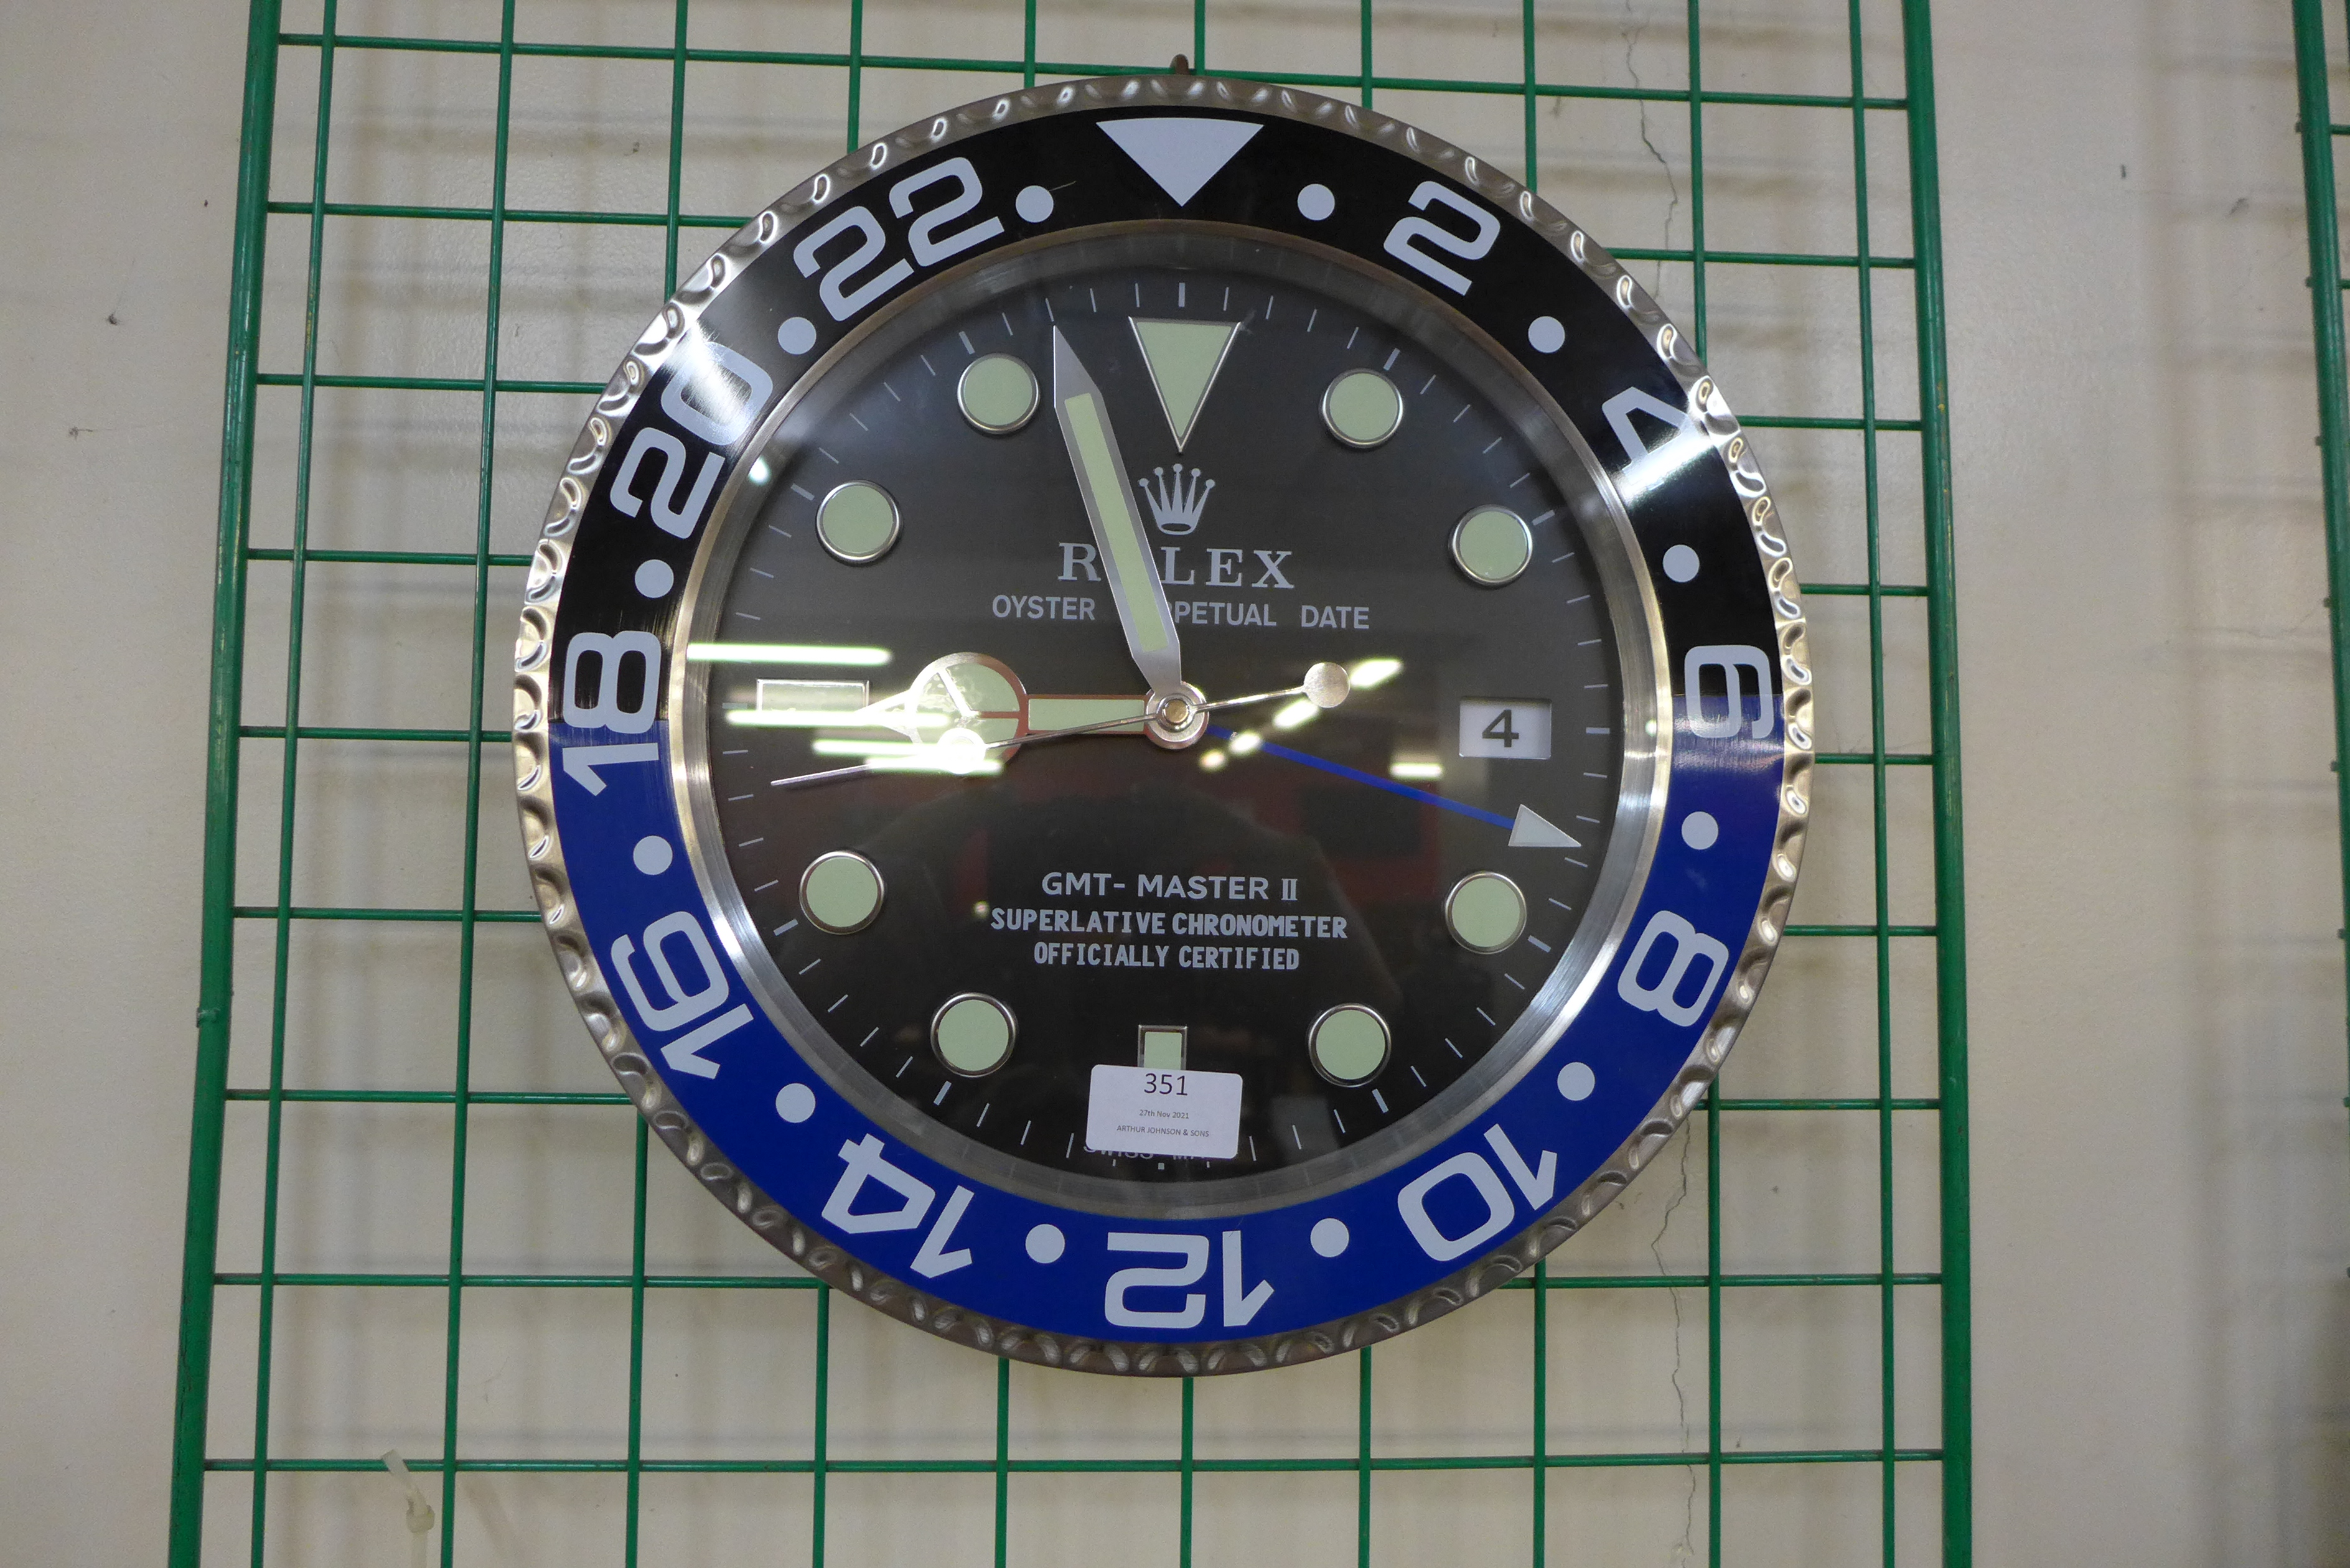 A Rolex style dealer's circular wall clock